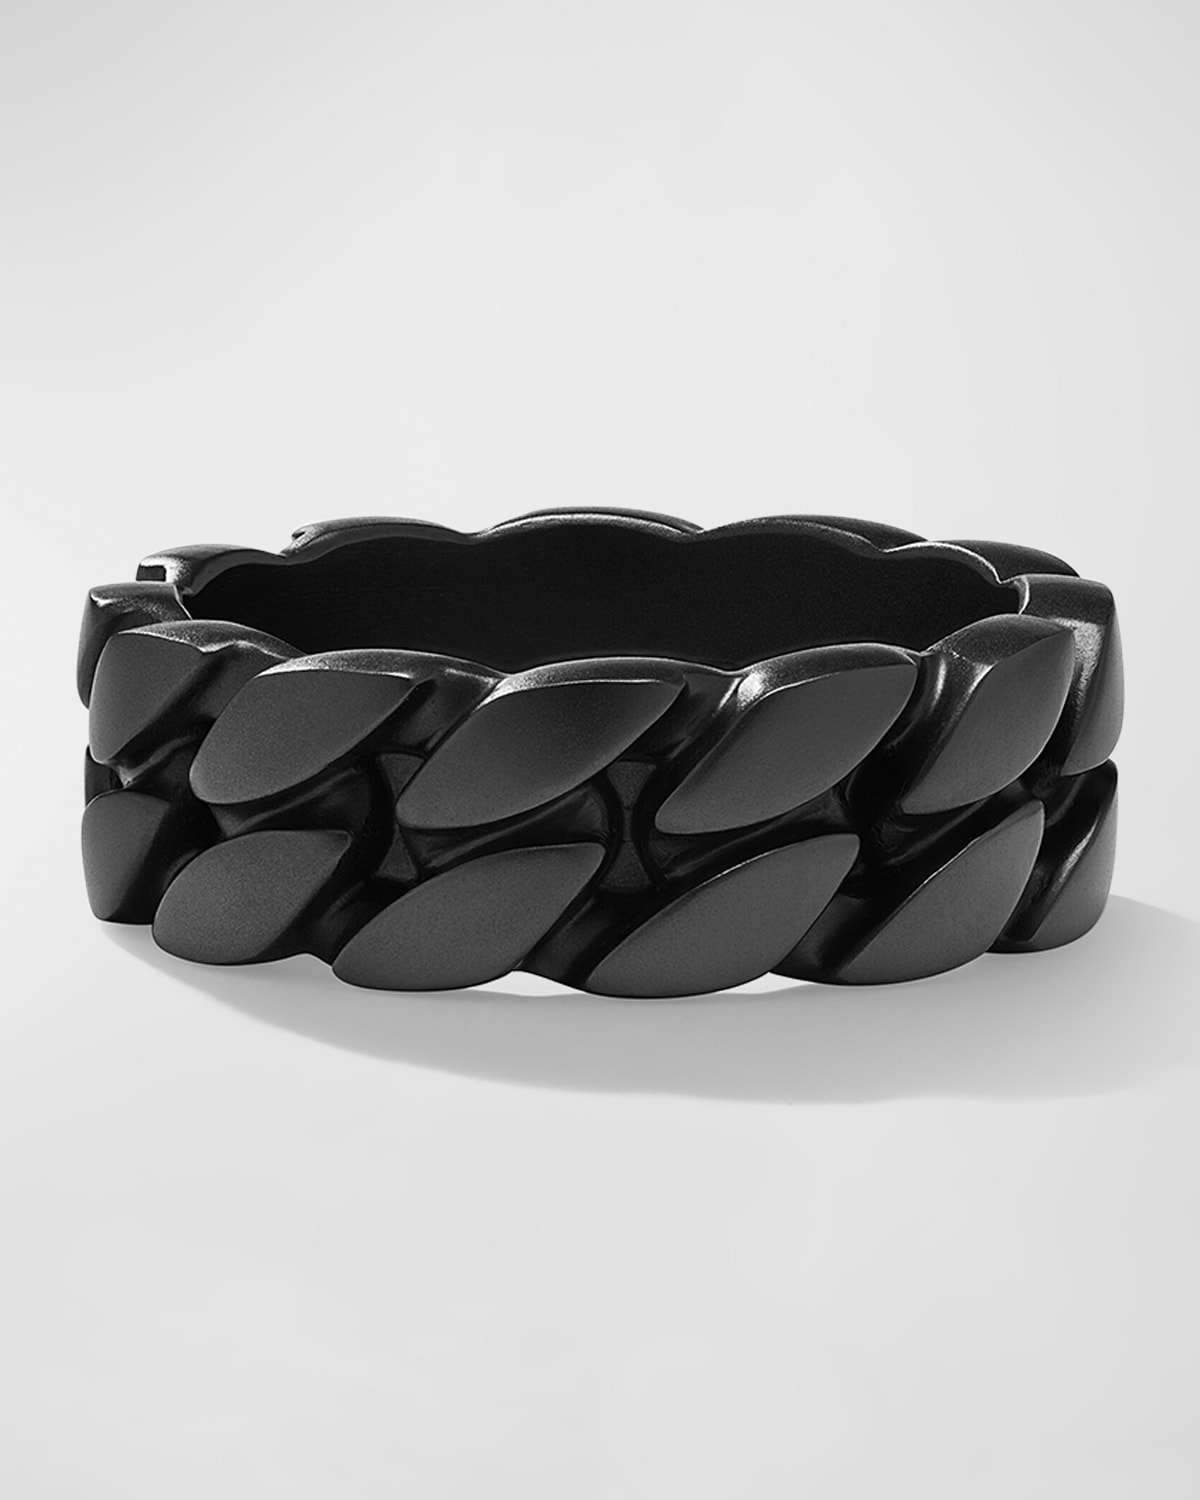 Men's Curb Chain Ring in Black Titanium, 8mm